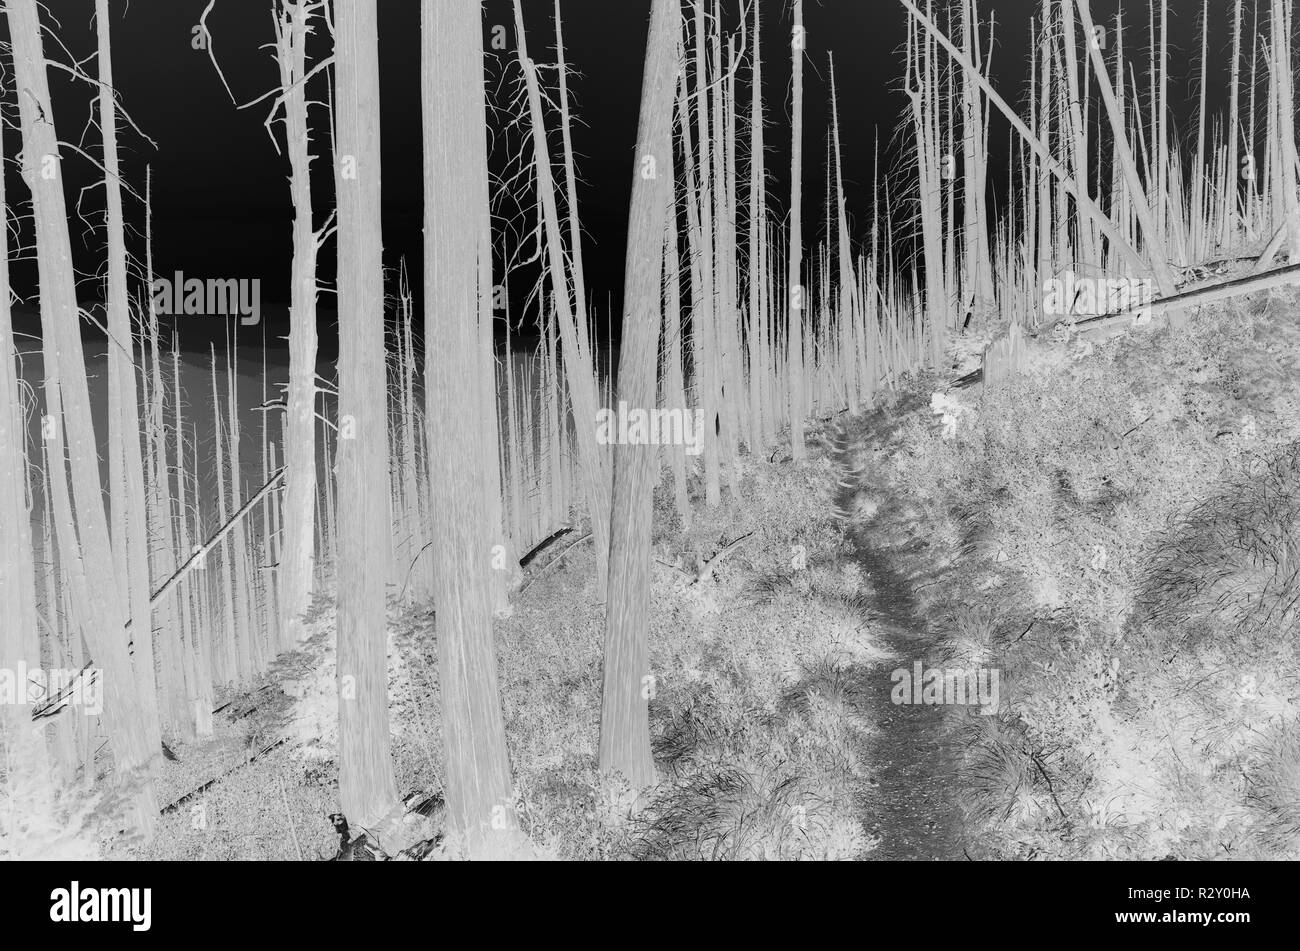 Le noir et blanc image inversée de la crête des Scandinaves feu de forêt arbres endommagés près de Mount Rainier National Park sur le Pacific Crest Trail. Banque D'Images